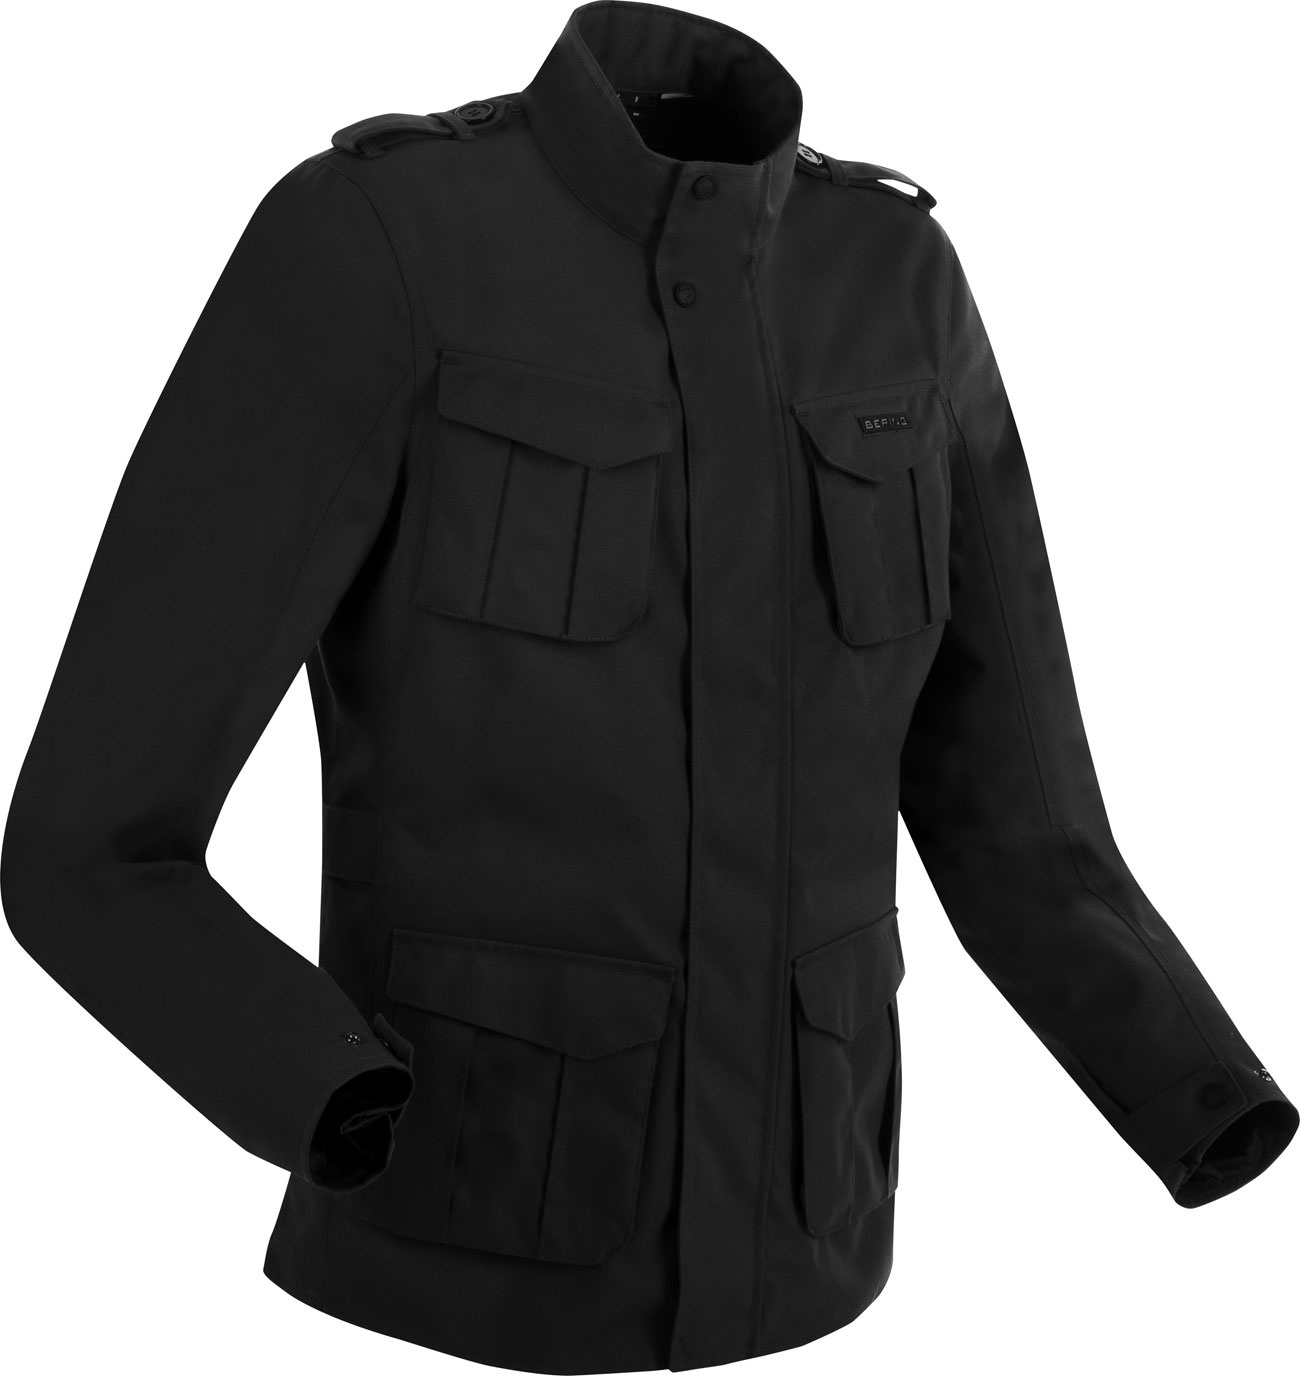 Bering Norris Evo, veste textile imperméable - Noir - XL